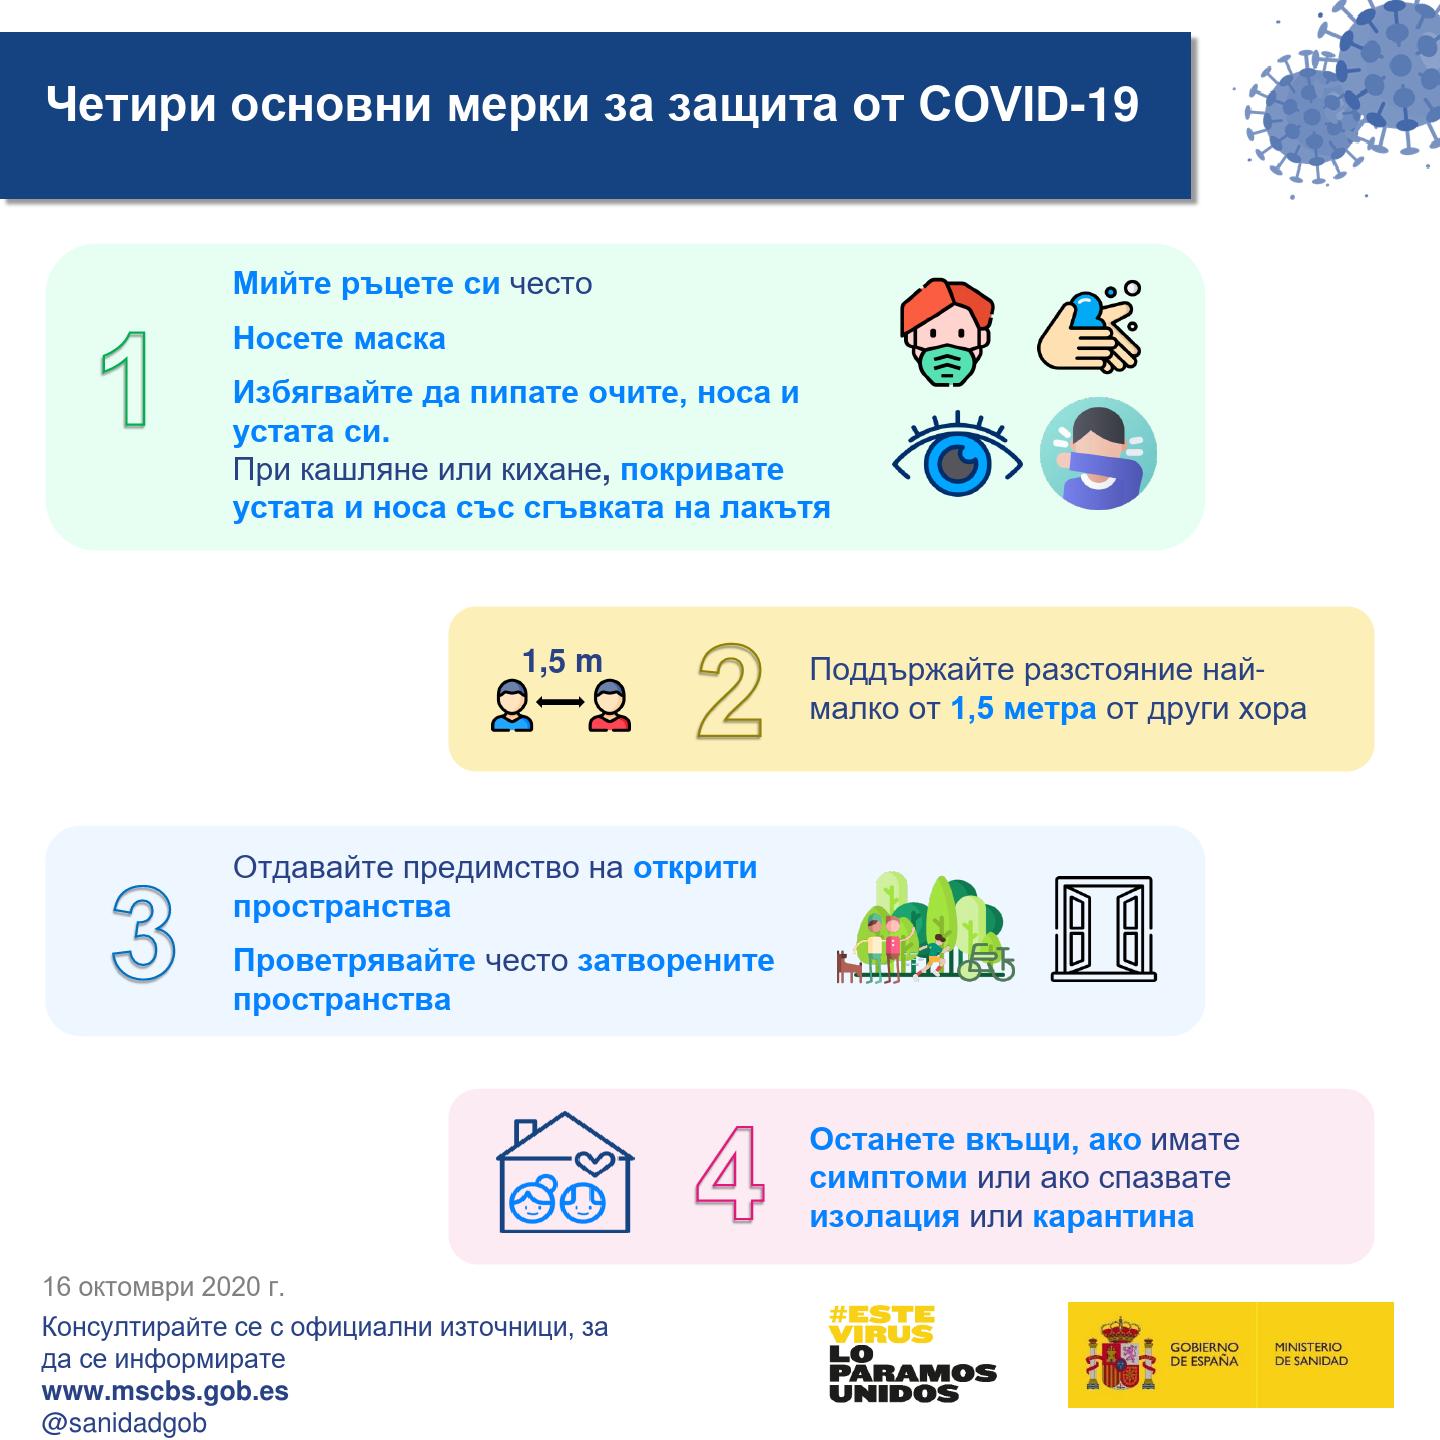 Четири основни мерки за защита от COVID-19